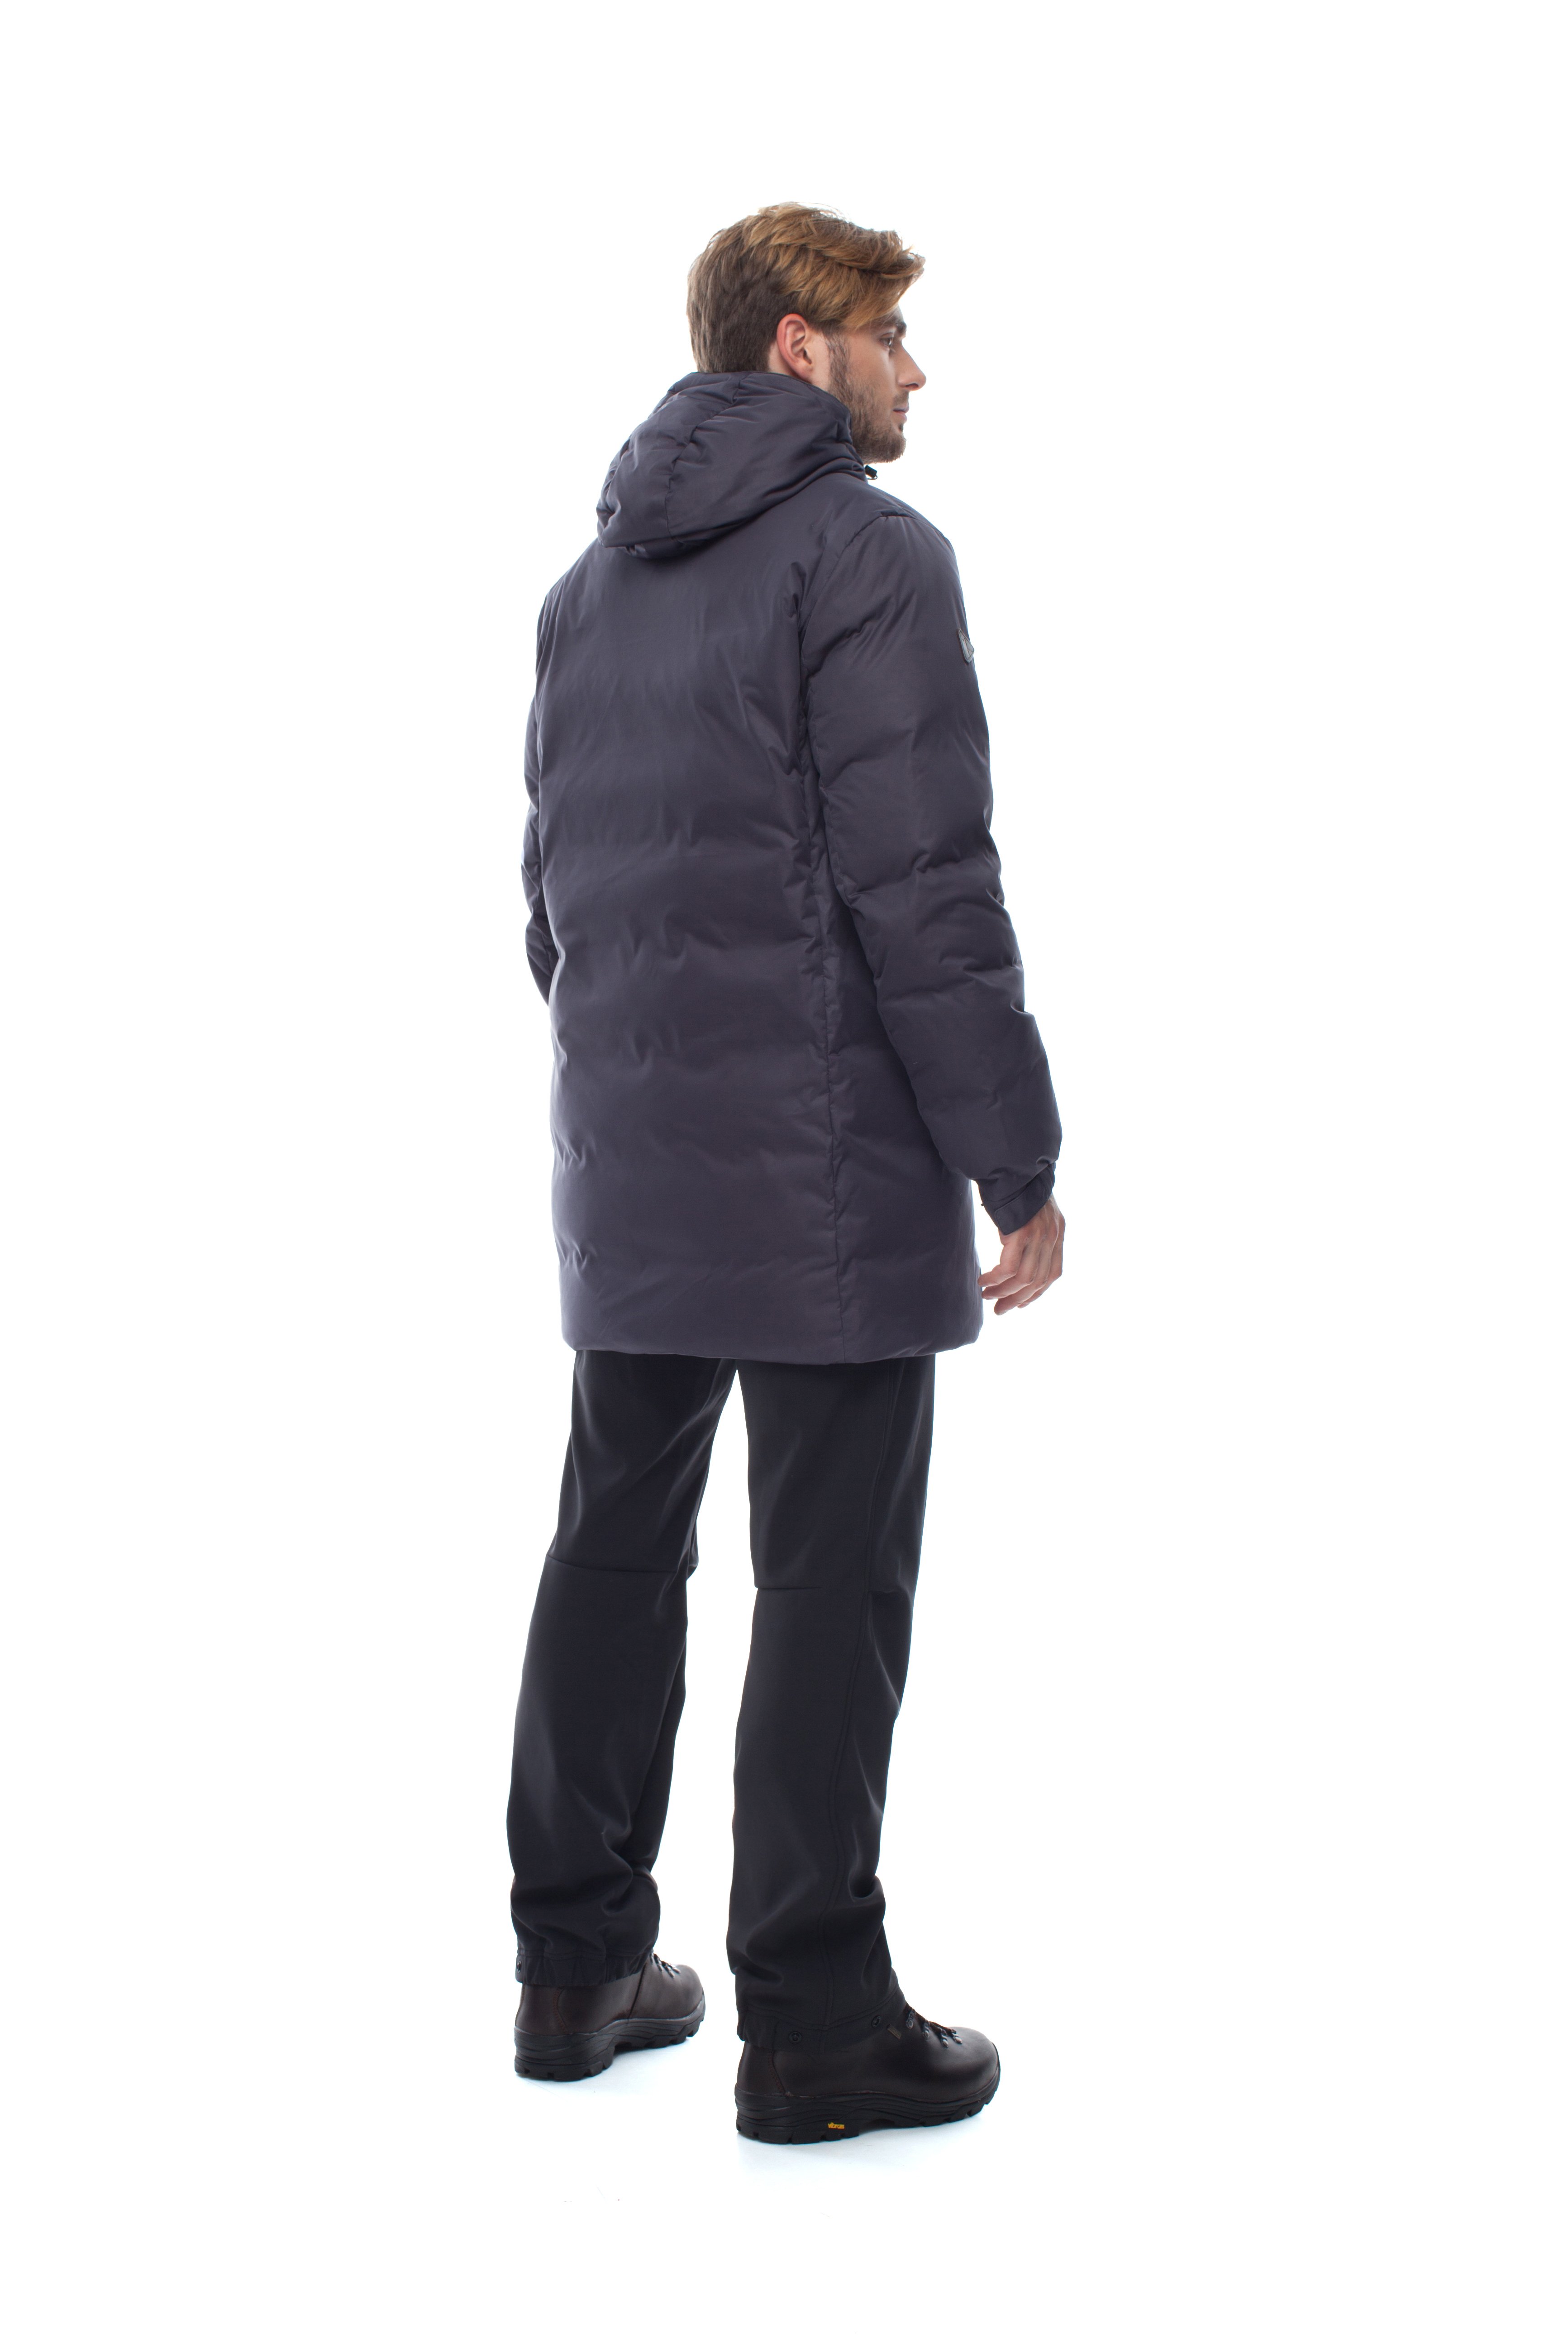 Пуховая куртка BASK ICEBERG LUX 5451 от Bask